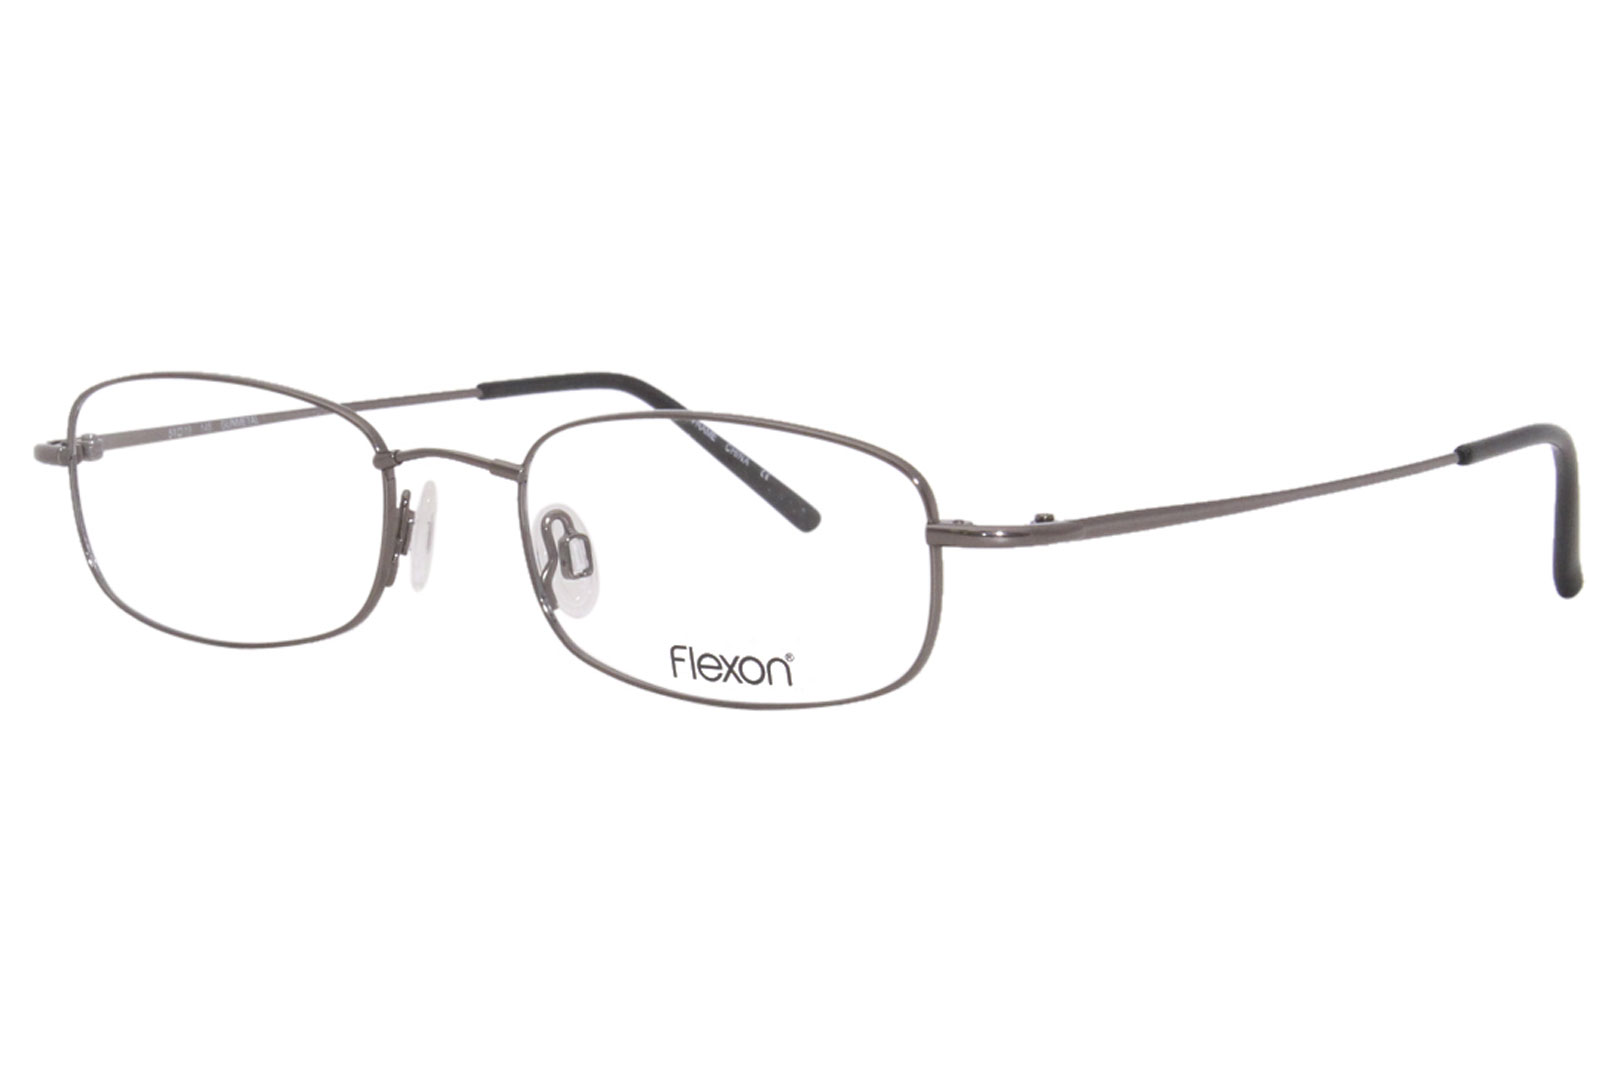 Flexon 603 Eyeglasses Men's Full Rim Rectangular Optical Frame ...